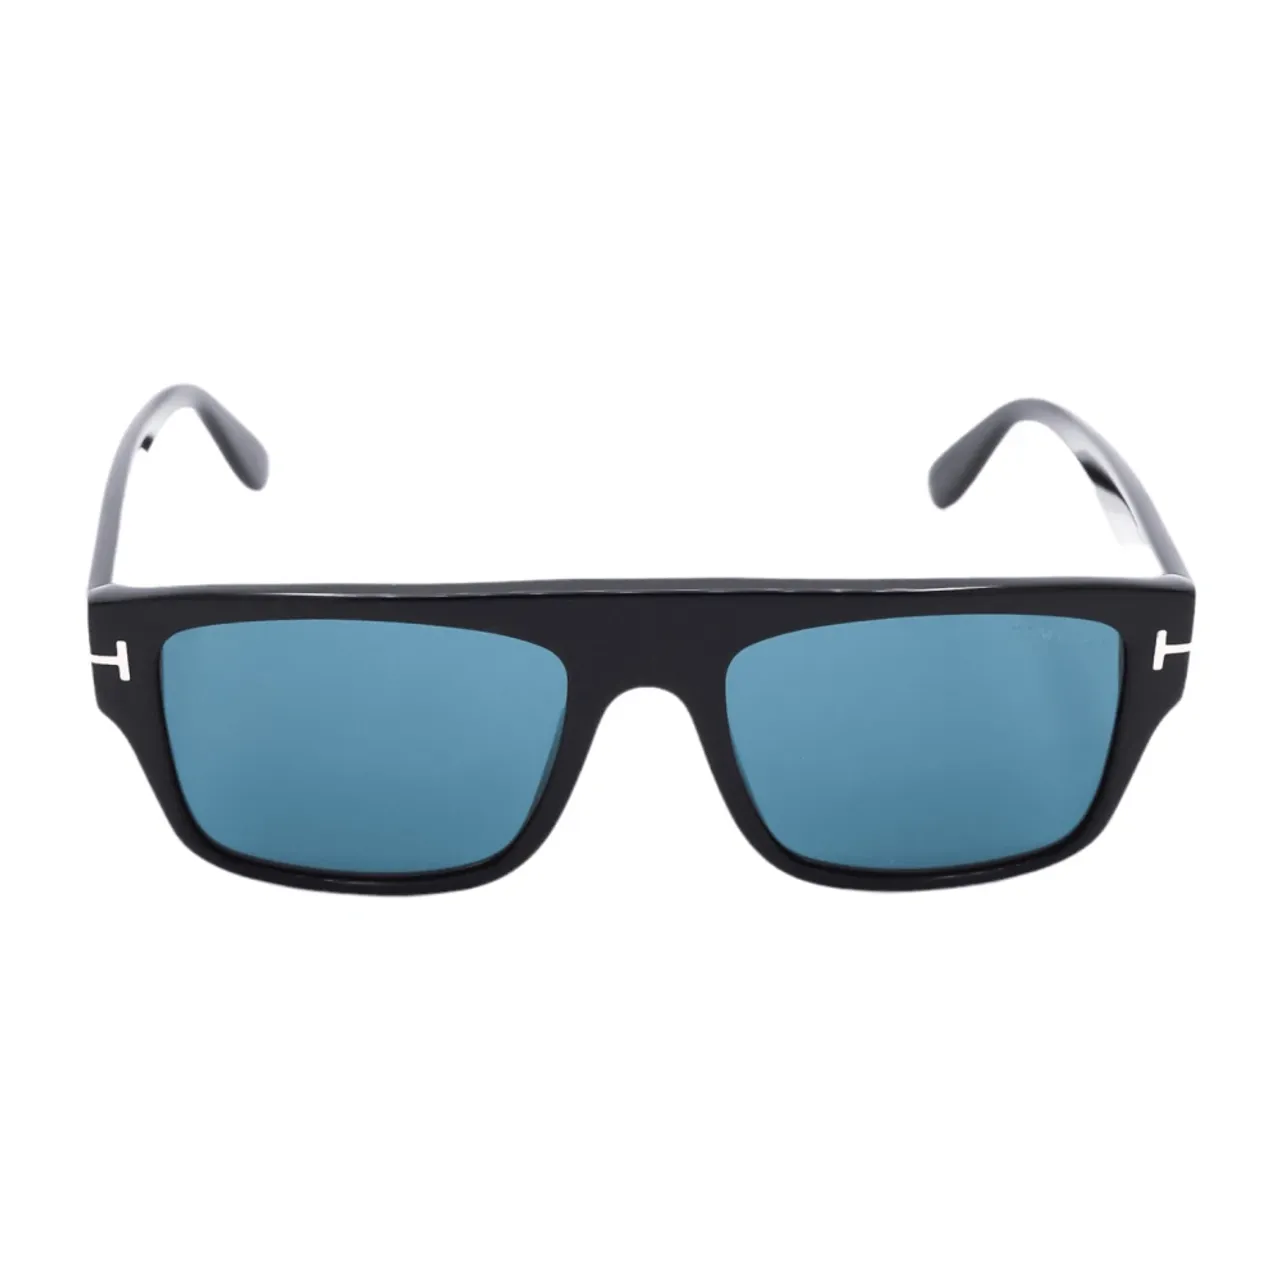 Rechteckige Sonnenbrille mit blauen Gläsern Tom Ford